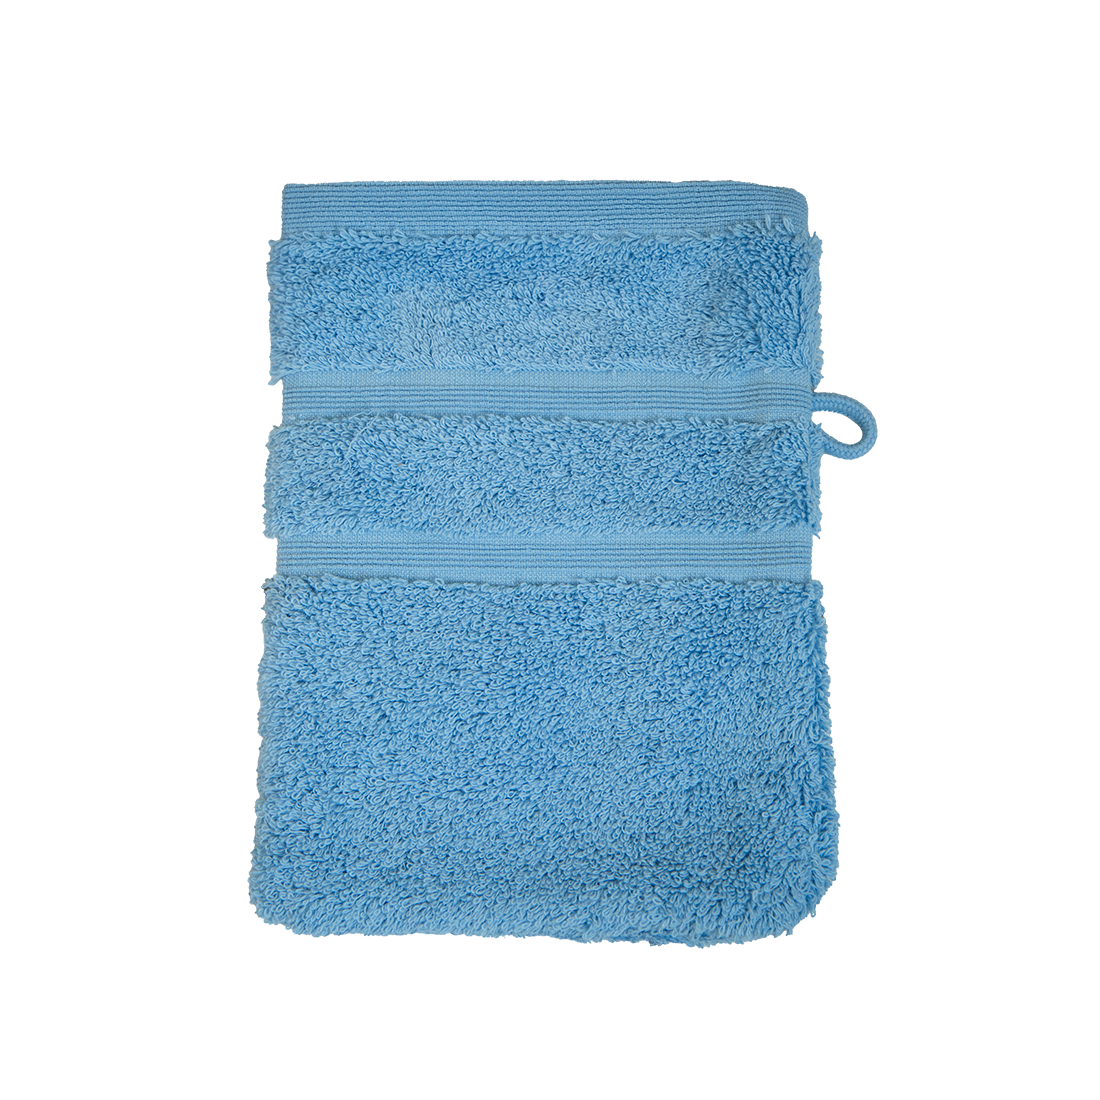 Bio Baumwoll Waschhandschuh, Größe 16 mal 21 cm in der Farbe Sky (Hellblau)